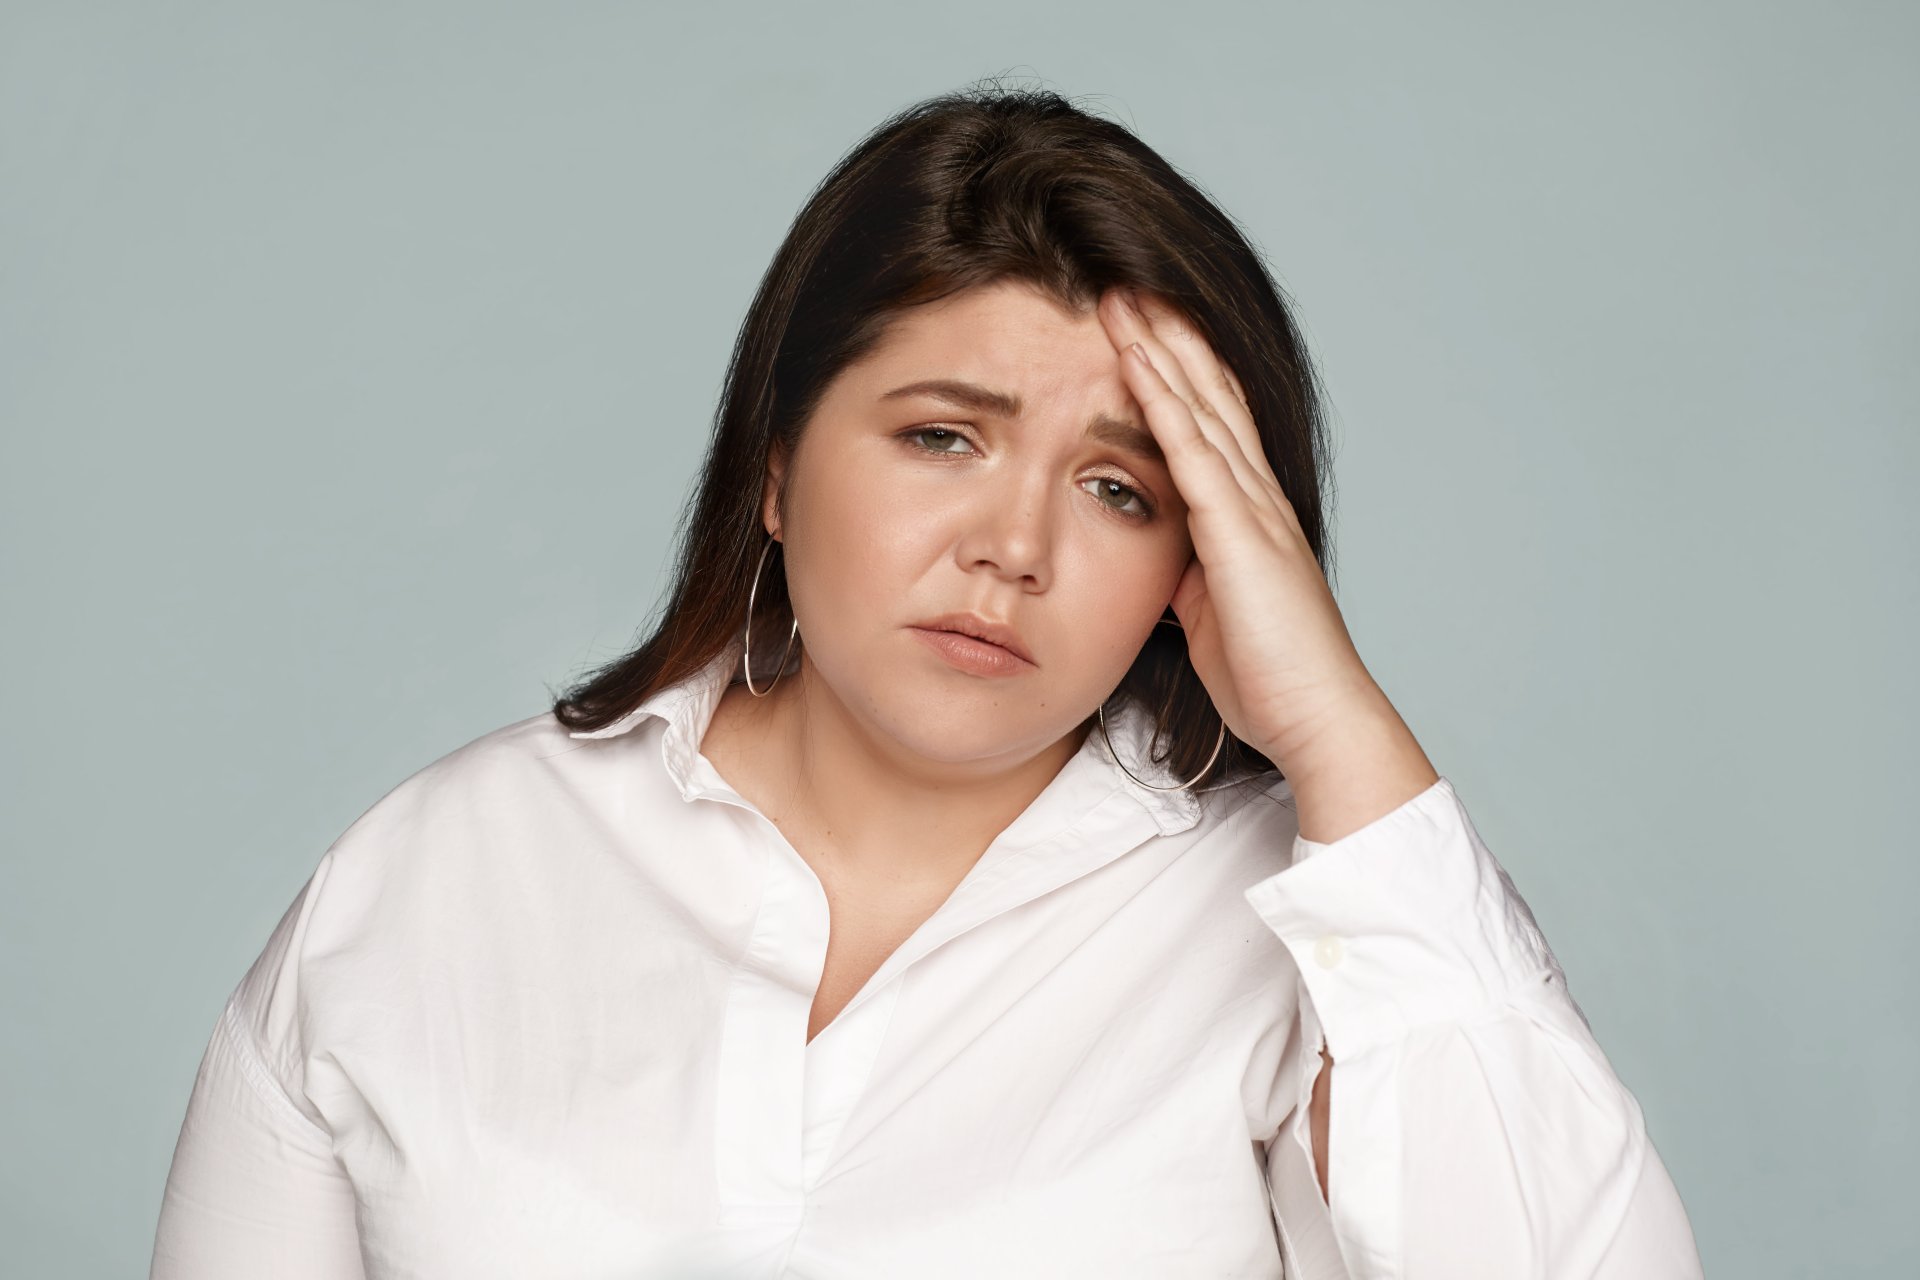 ยิ่งเครียด ยิ่งอ้วน จริงหรือ? ทำความรู้จักฮอร์โมนแห่งความเครียด